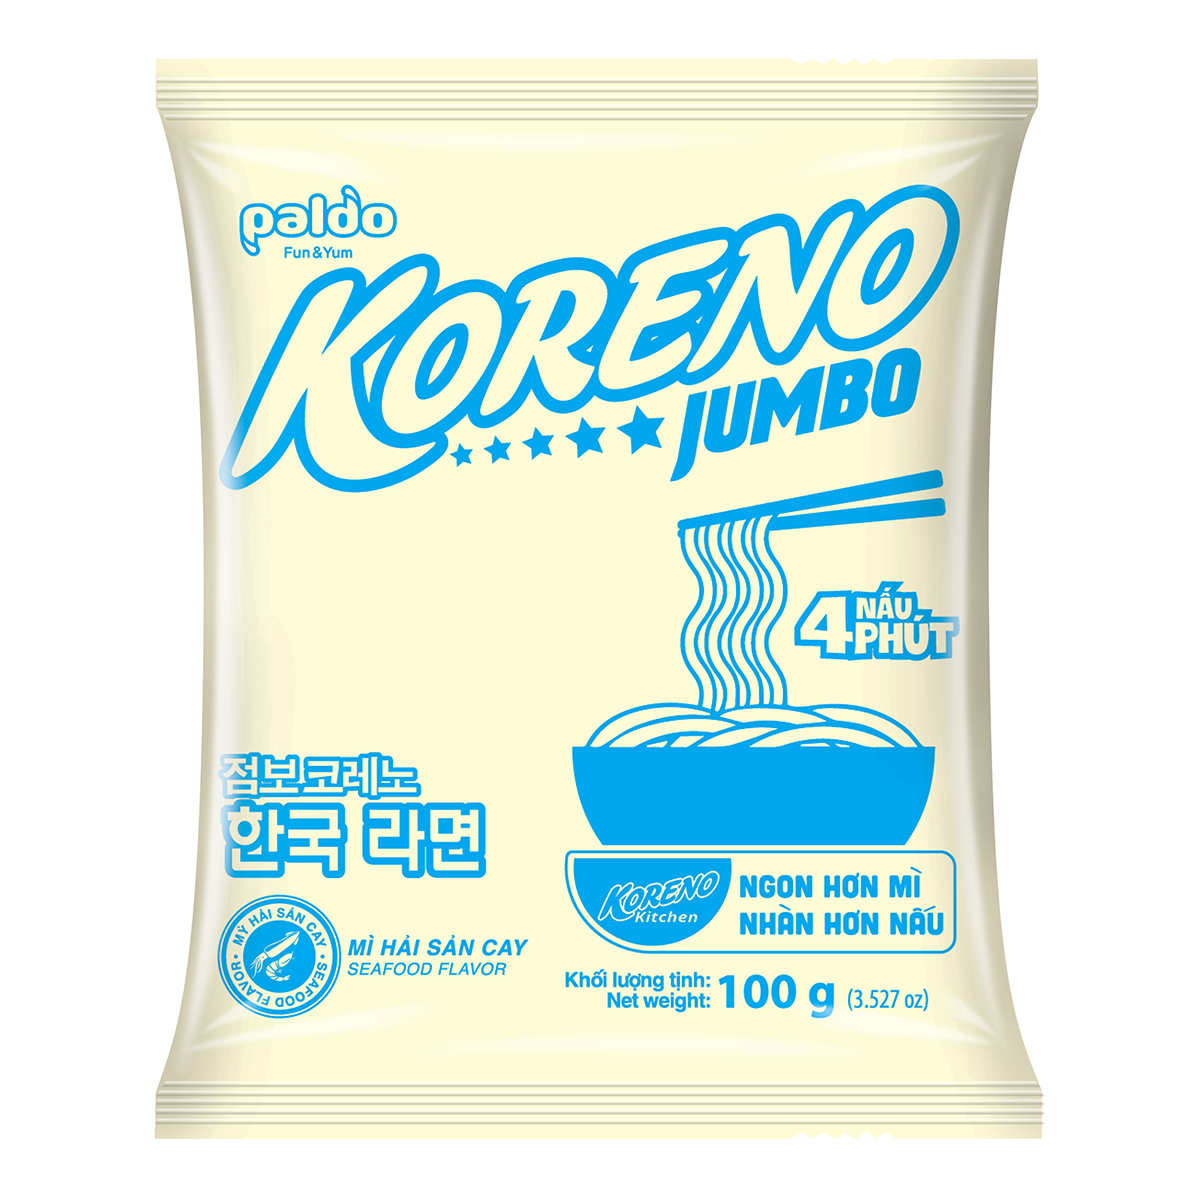 Lốc Mì hải sản cay Koreno Jumbo (100G x 10 Gói)